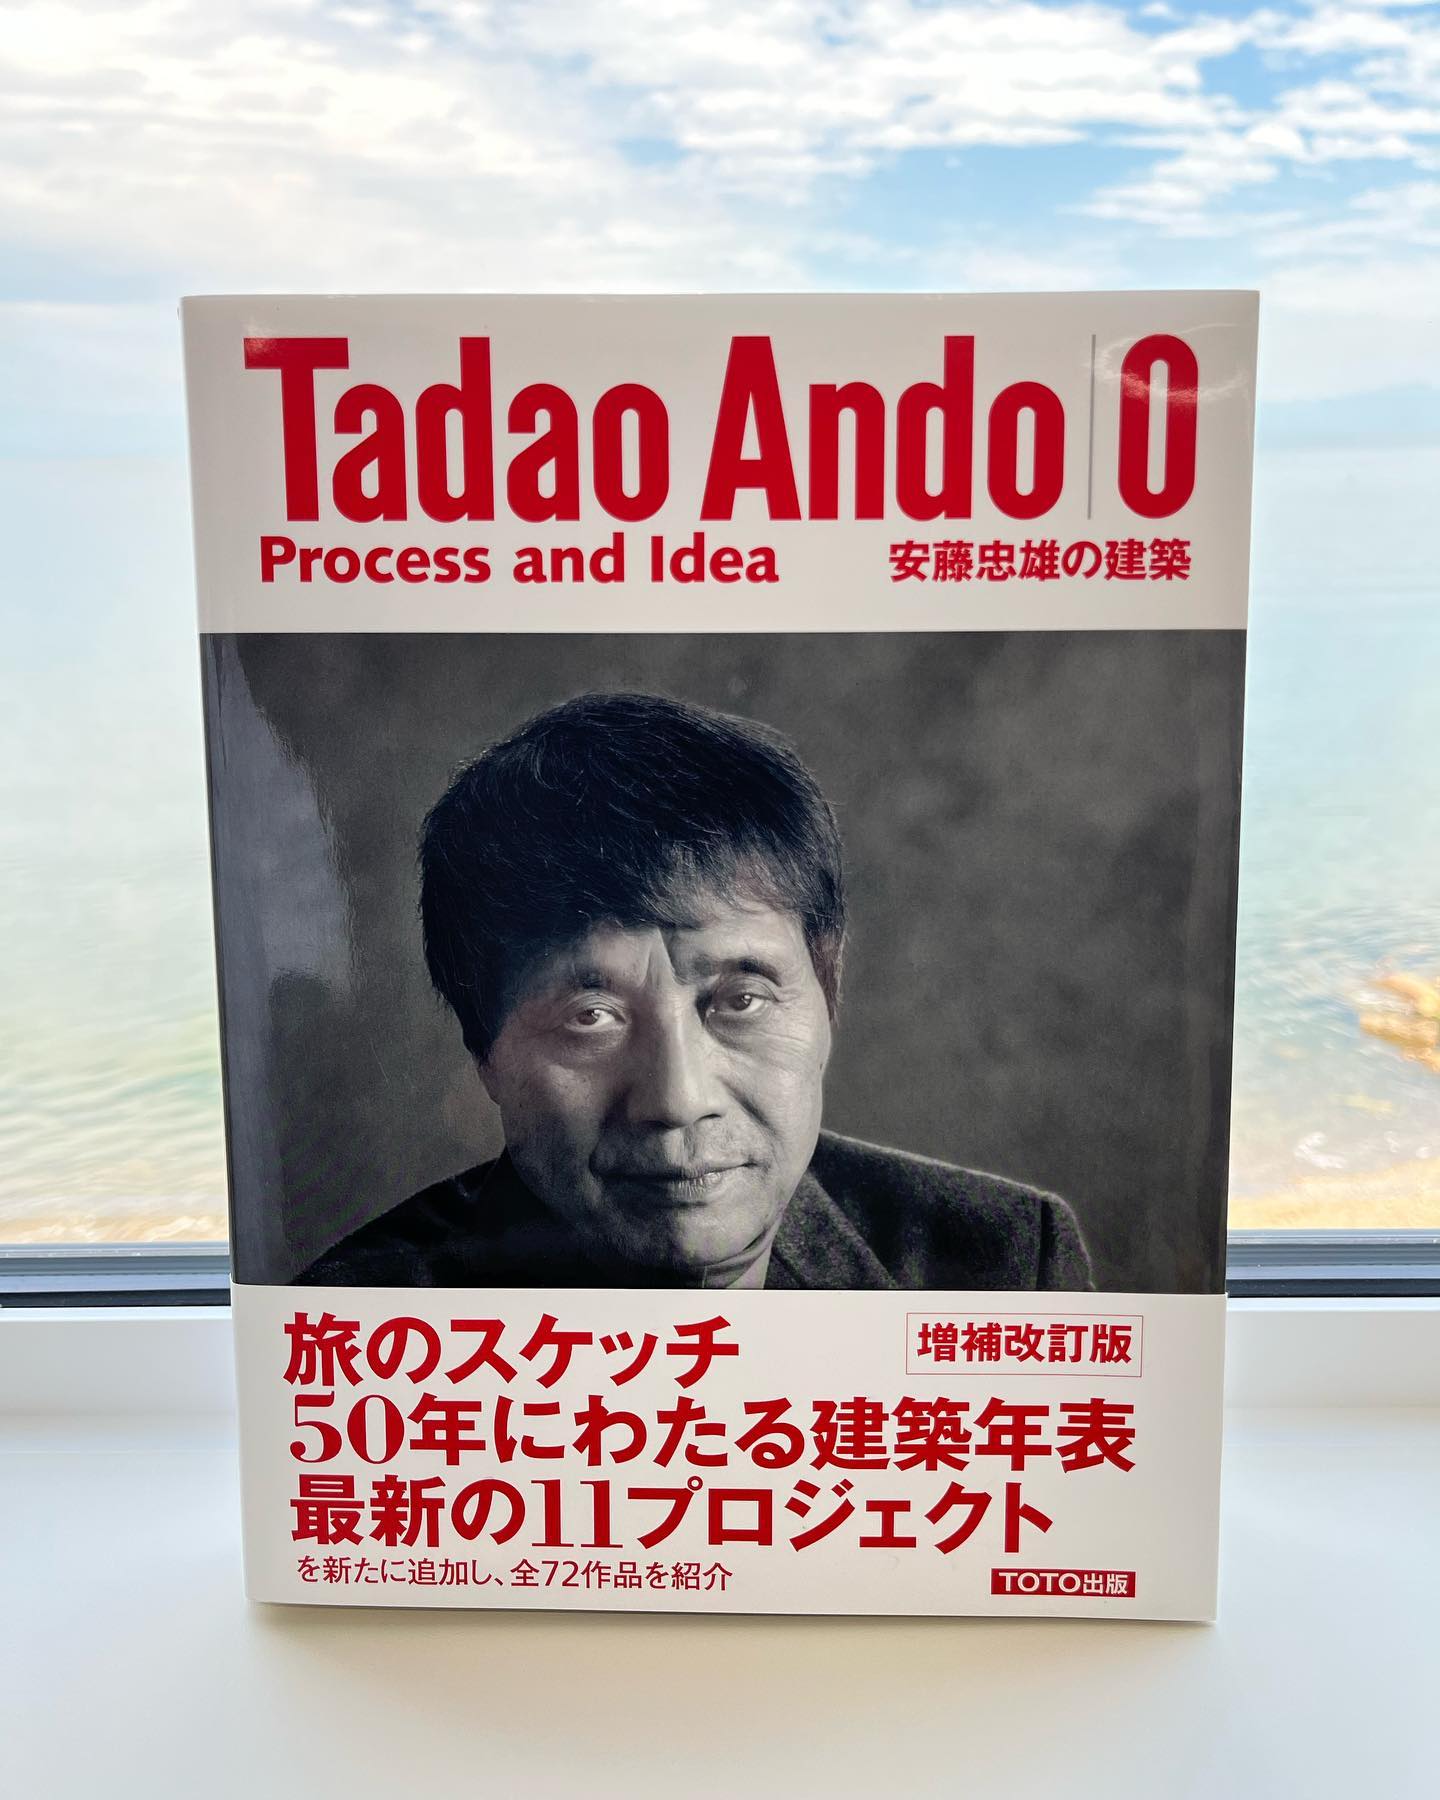 書籍紹介です。日本を代表する建築家・安藤忠雄さんの『Tadao Ando 0』です。安藤さんの頭の中を垣間見えるような濃密な書籍です。独立の際に講演会へ伺い、サインして頂きました。以下その際のやりとり自分「建築士しています」安藤忠雄「最悪や笑」自分「最近独立しました」安藤忠雄「一番最悪や！若いんやから違うことしや笑」何故か応援してくれない！でもまだなんとか食べていけてます。これからも頑張ろう。Archiworks(アーキワークス)高島市の設計事務所建築士・設備士の有資格者による建築相談やご依頼等ありましたら下記HPのTEL又はメールフォームよりご連絡く下さい。・注文住宅・住宅リフォーム・リノベーション・設備設計業務(電気設備・換気空調設備・給排水衛生設備・消防設備等)・店舗等設計監理お気軽にお問い合わせ下さい。このInstagramは中の人が日々の業務や建築情報等を徒然なるままに発信しています。是非フォロー・いいね！をお願いします。__________________________有限会社Archiworkshttps://archiworks2001.com/————————————————#archiworks#アーキワークス#設計事務所#建築士#建築家と建てる家#高島市 #安藤忠雄 #tadaoando #日々勉強 #講演面白かった #応援してよ